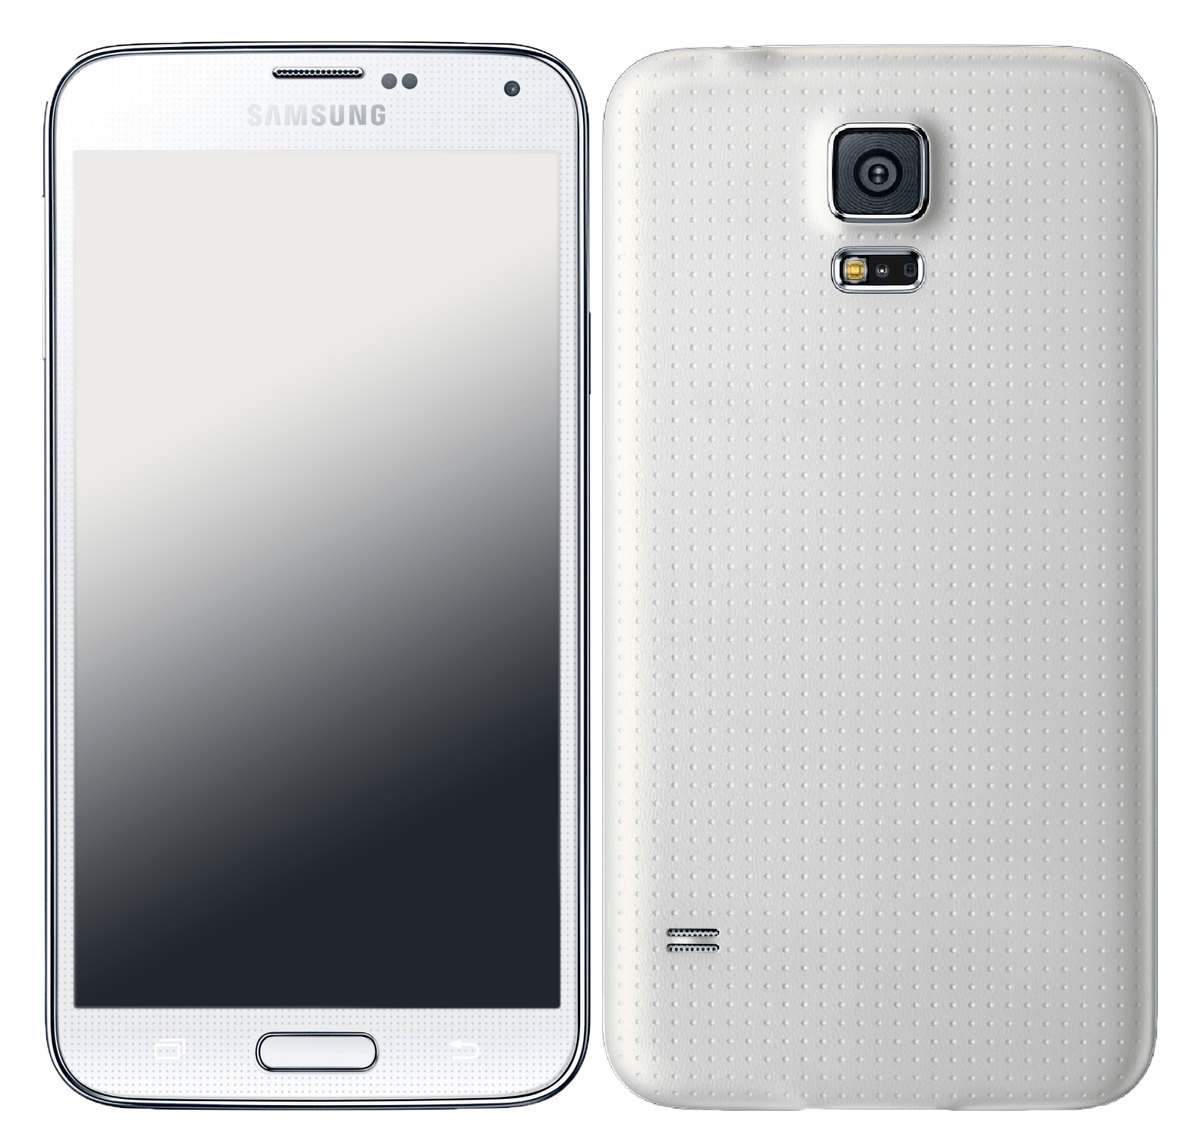 Samsung Galaxy S5 G900F weiß - Onhe Vertrag